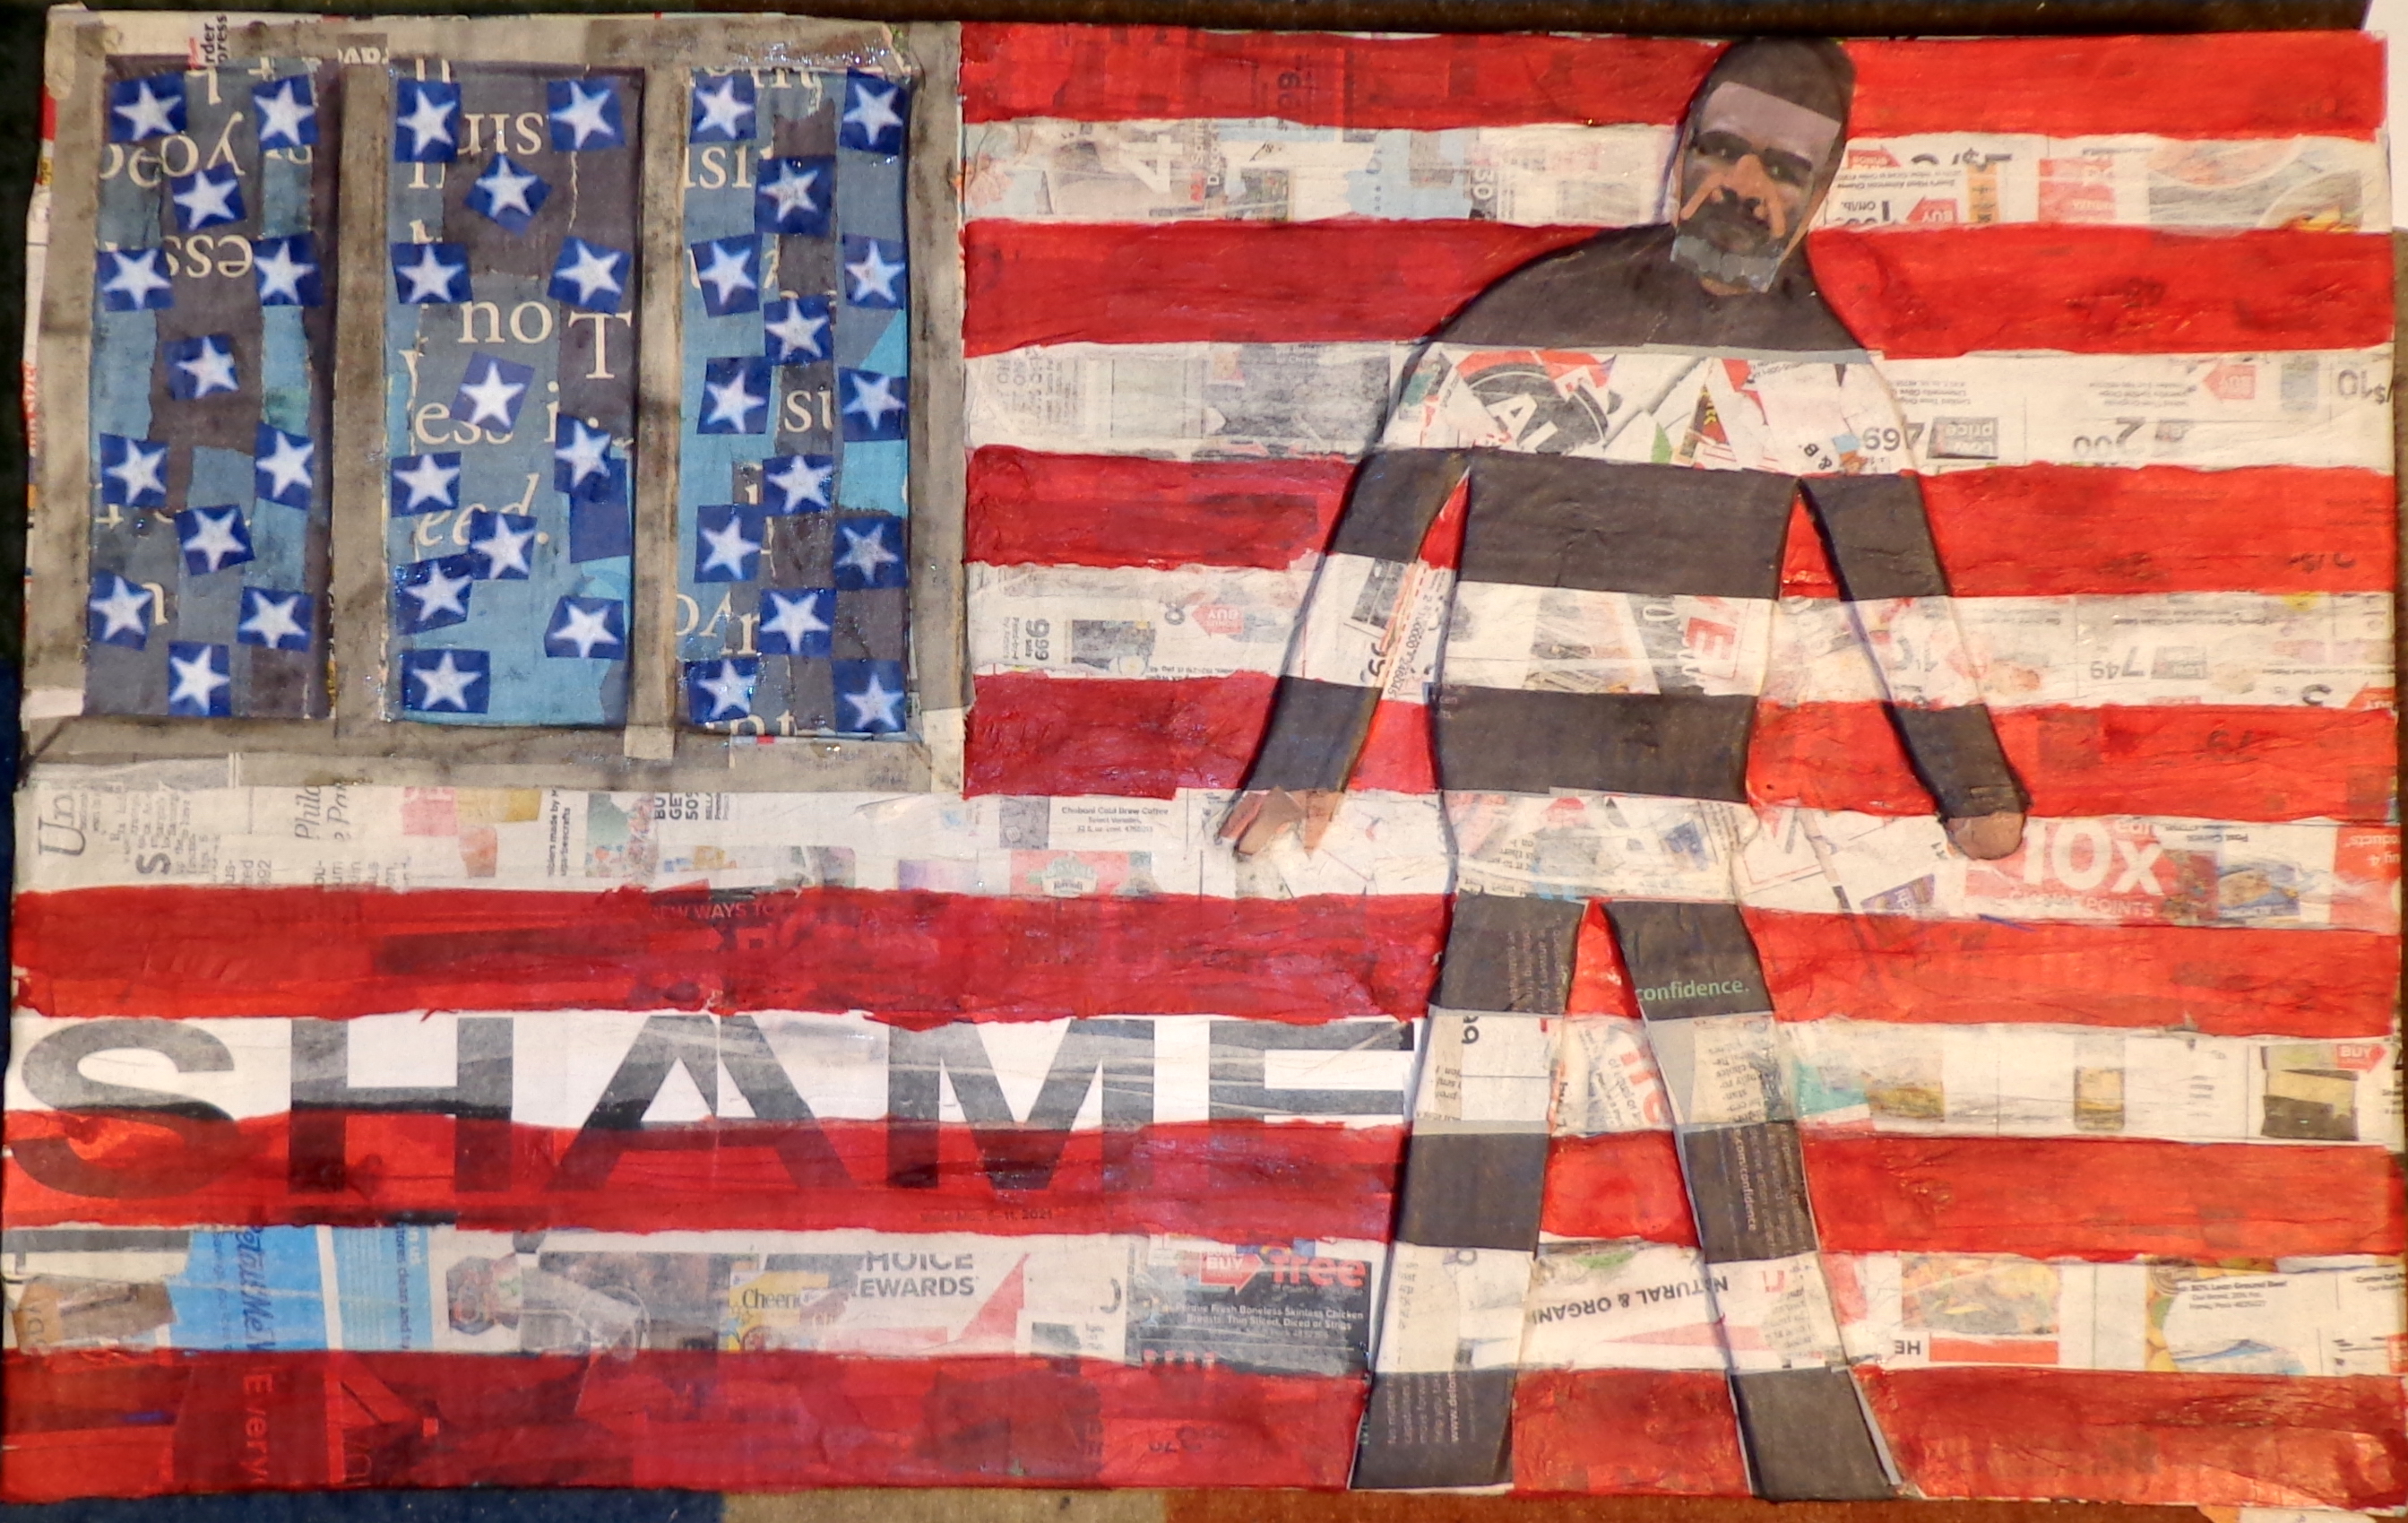 Drew Zimmerman art: Shame